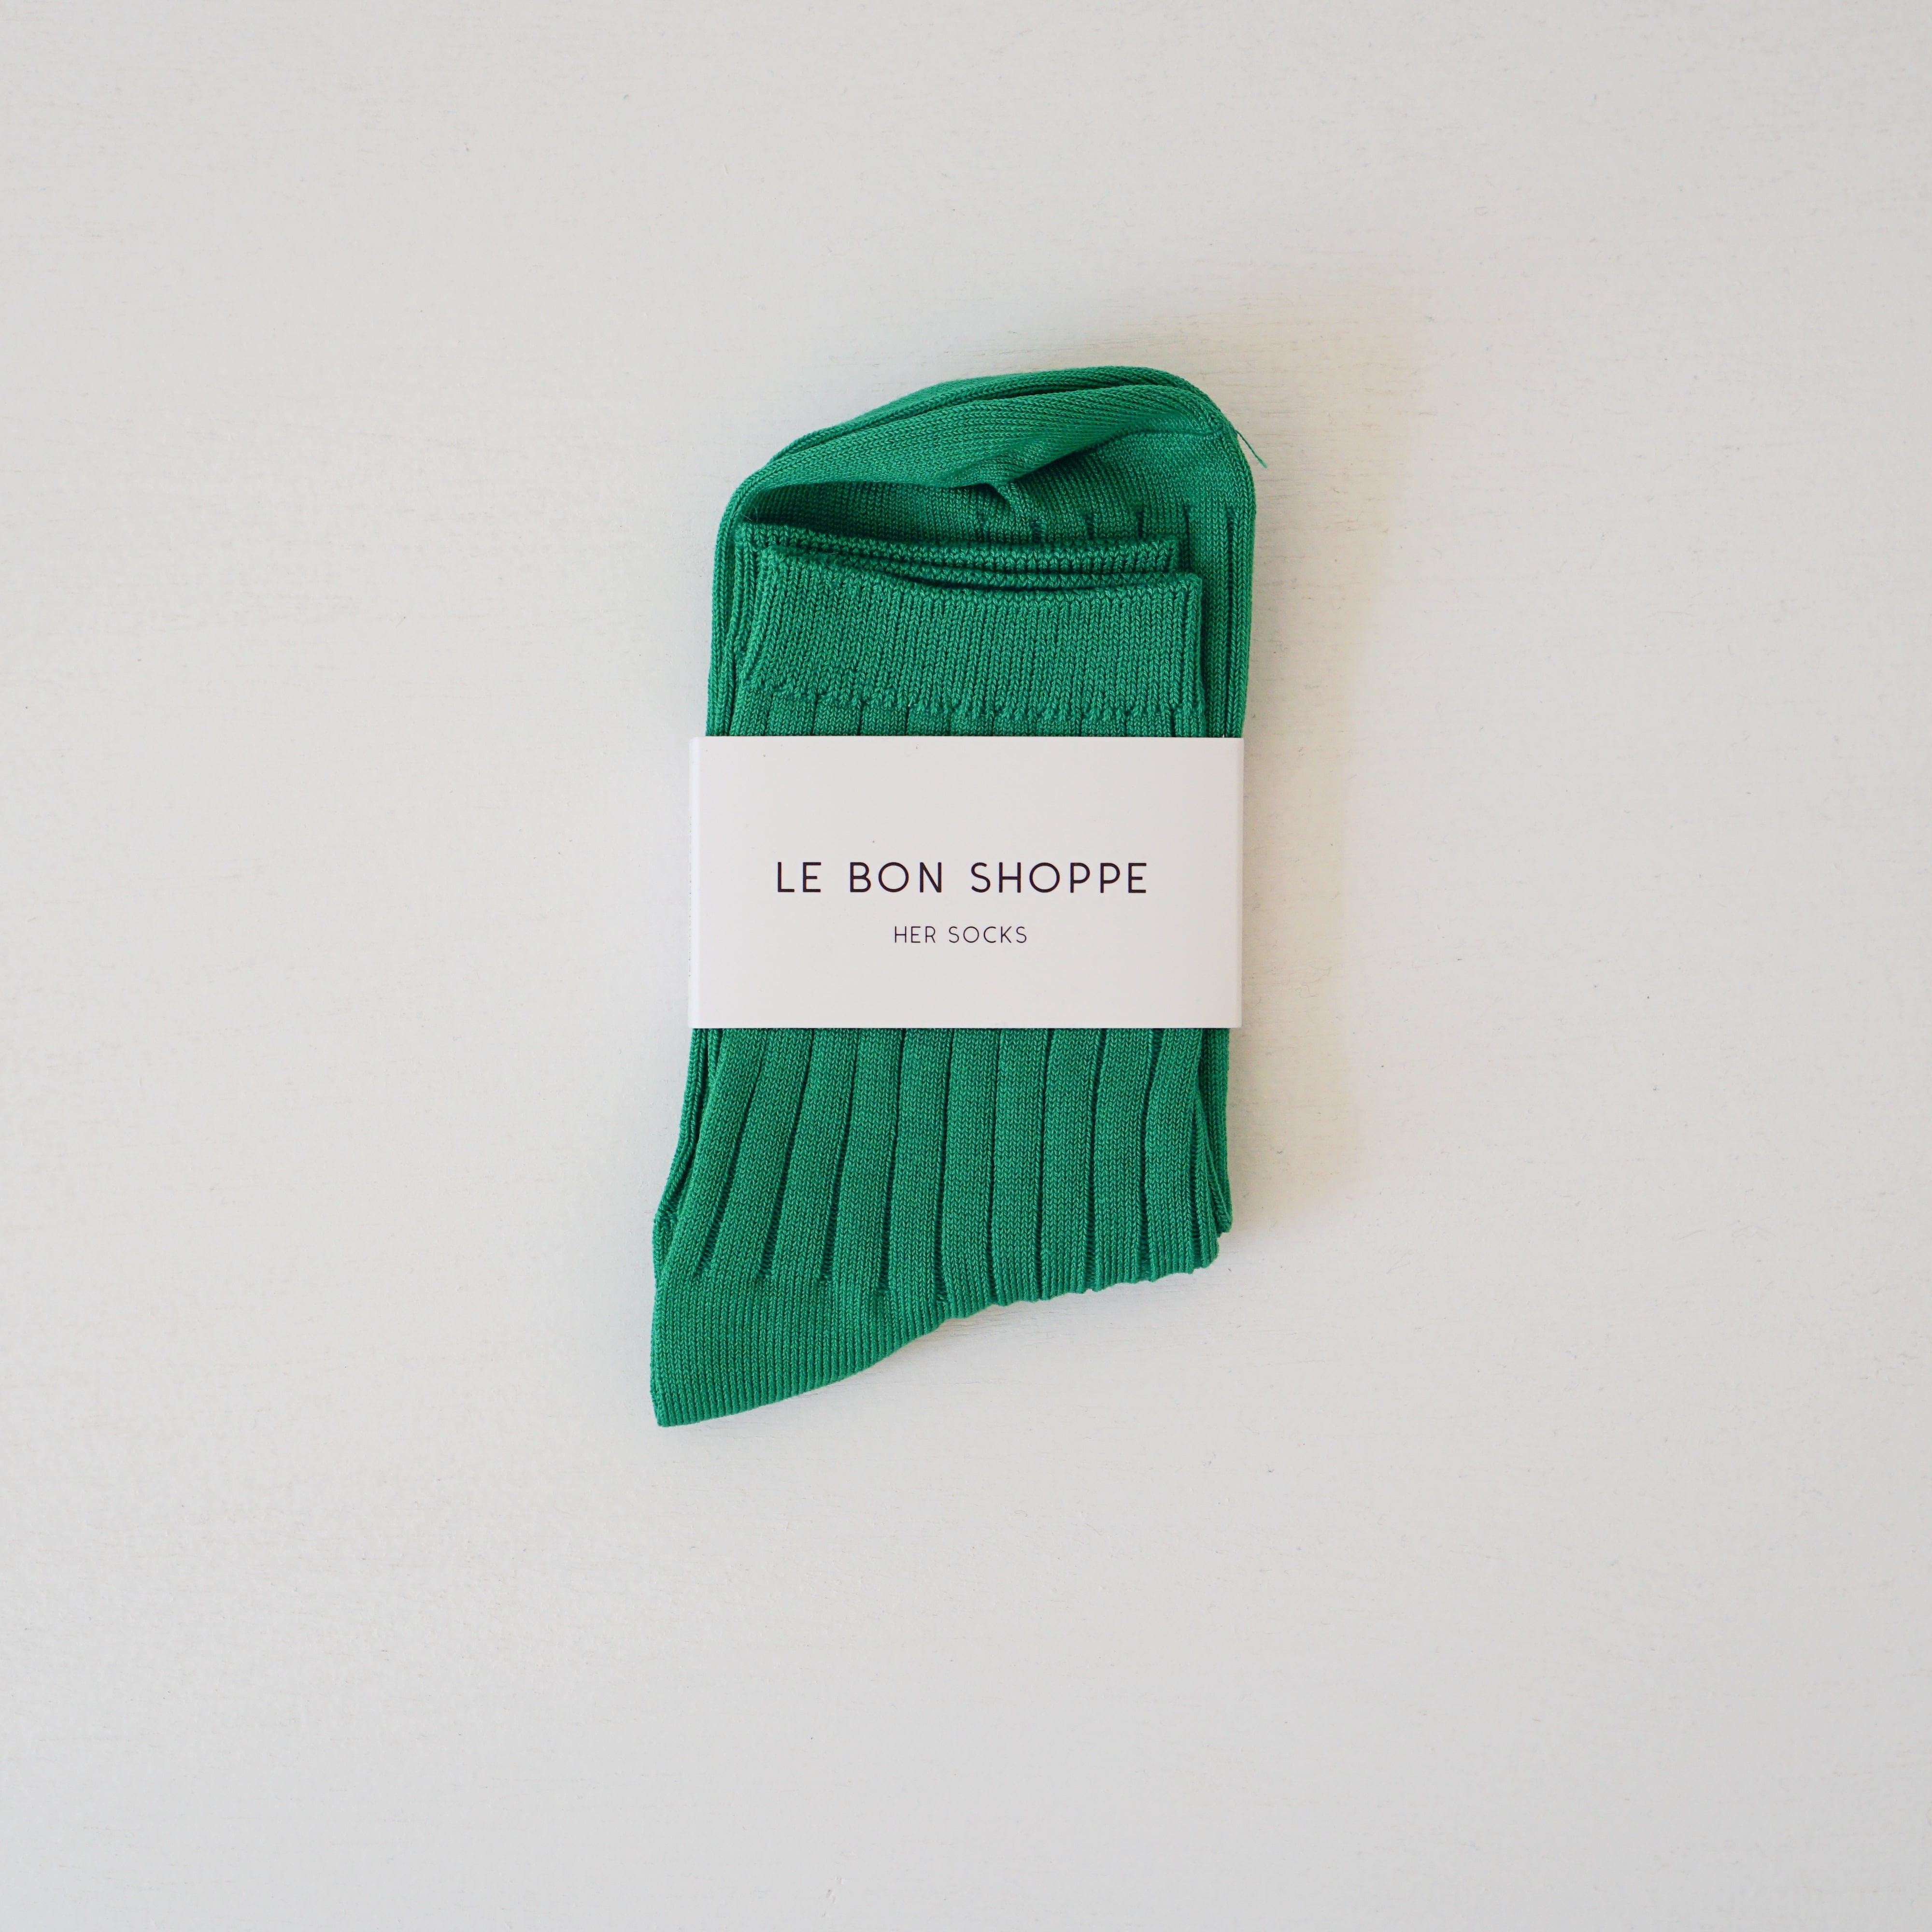 Le Bon Shoppe socks Kelly Green Le Bon "Her" Socks